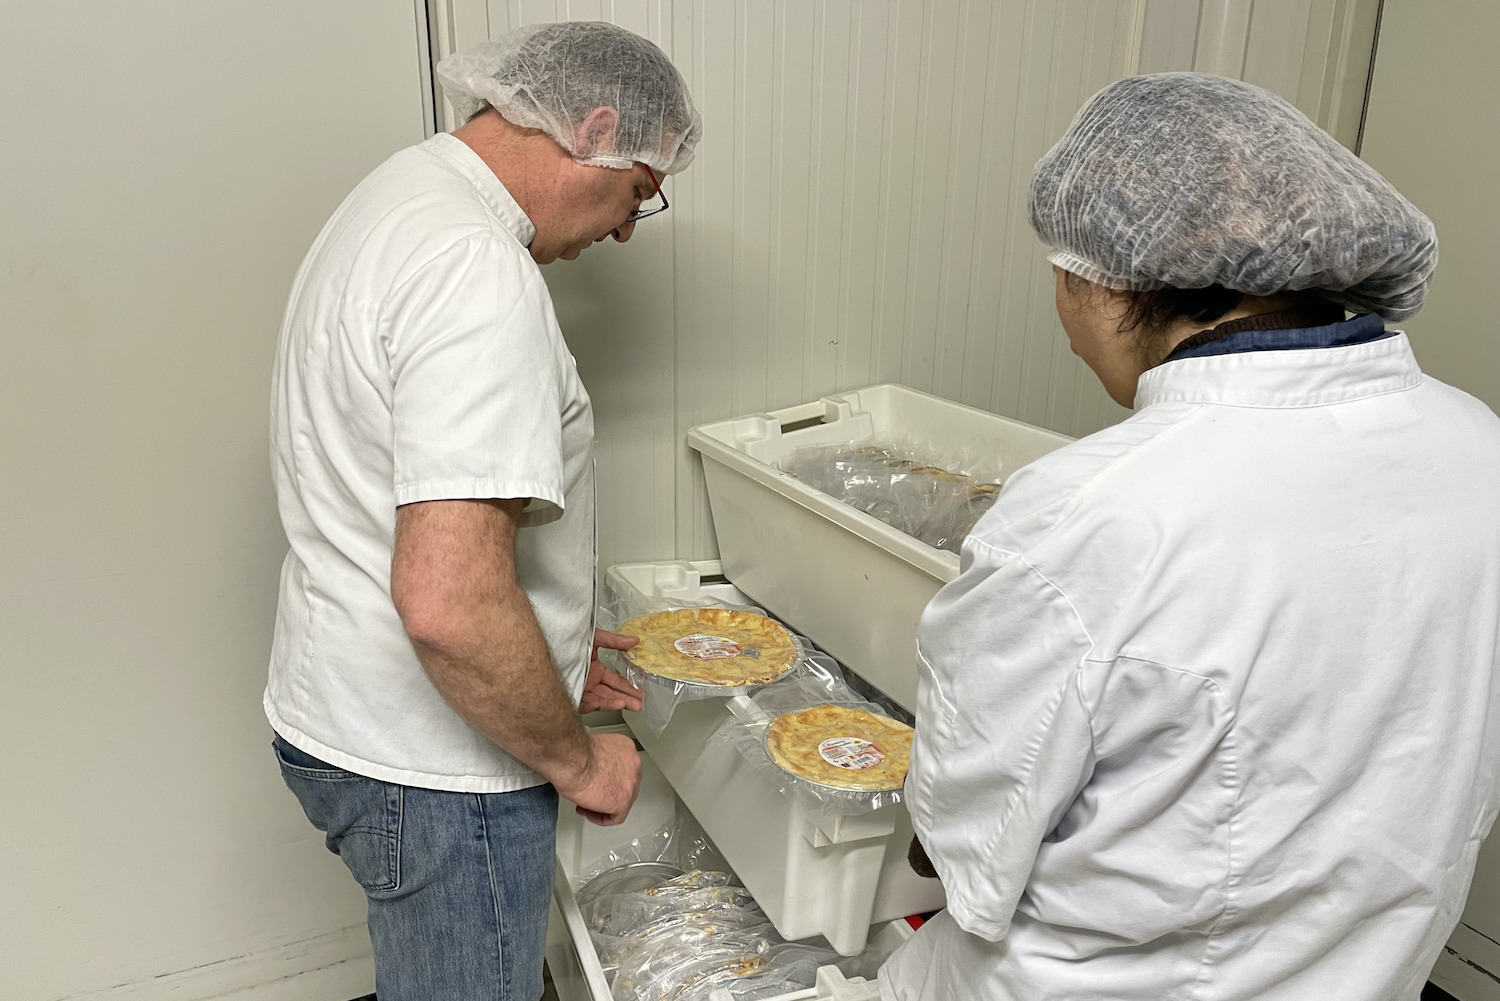 Les travailleurs produisent aussi des cookies, qui remportent un vrai succès auprès des consommateurs © Globe Reporters